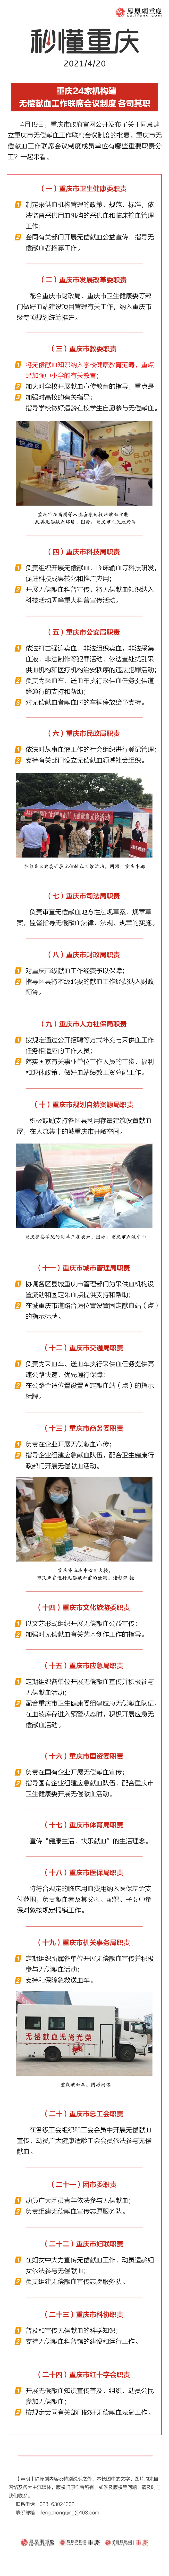 秒懂重庆 | 重庆24家机构建无偿献血工作联席会议制度 各司其职